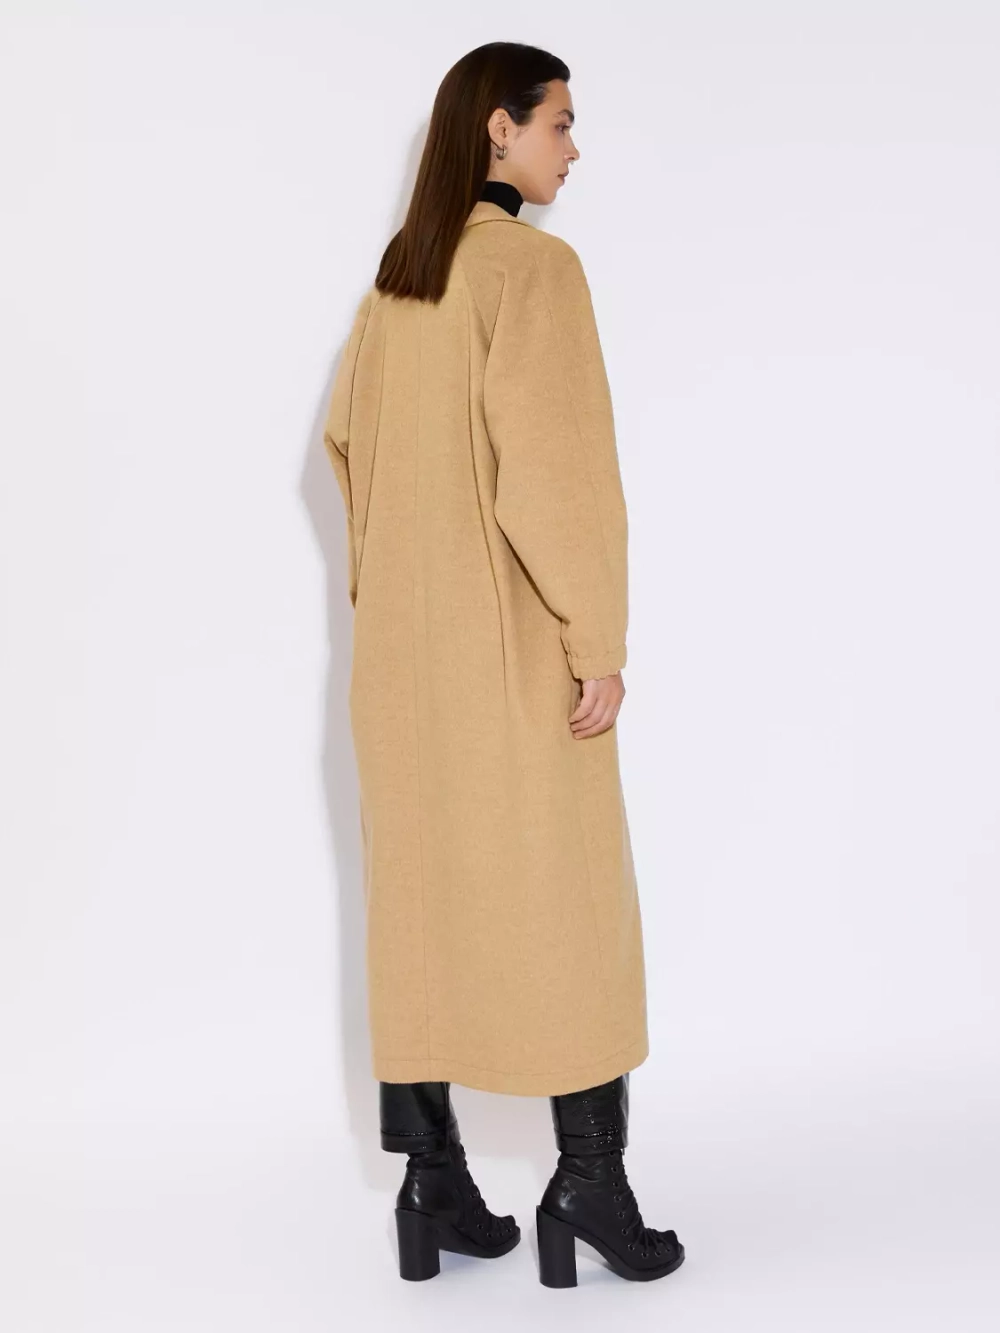 Пальто-халат бежевого цвета с вышивкой OLA OLA